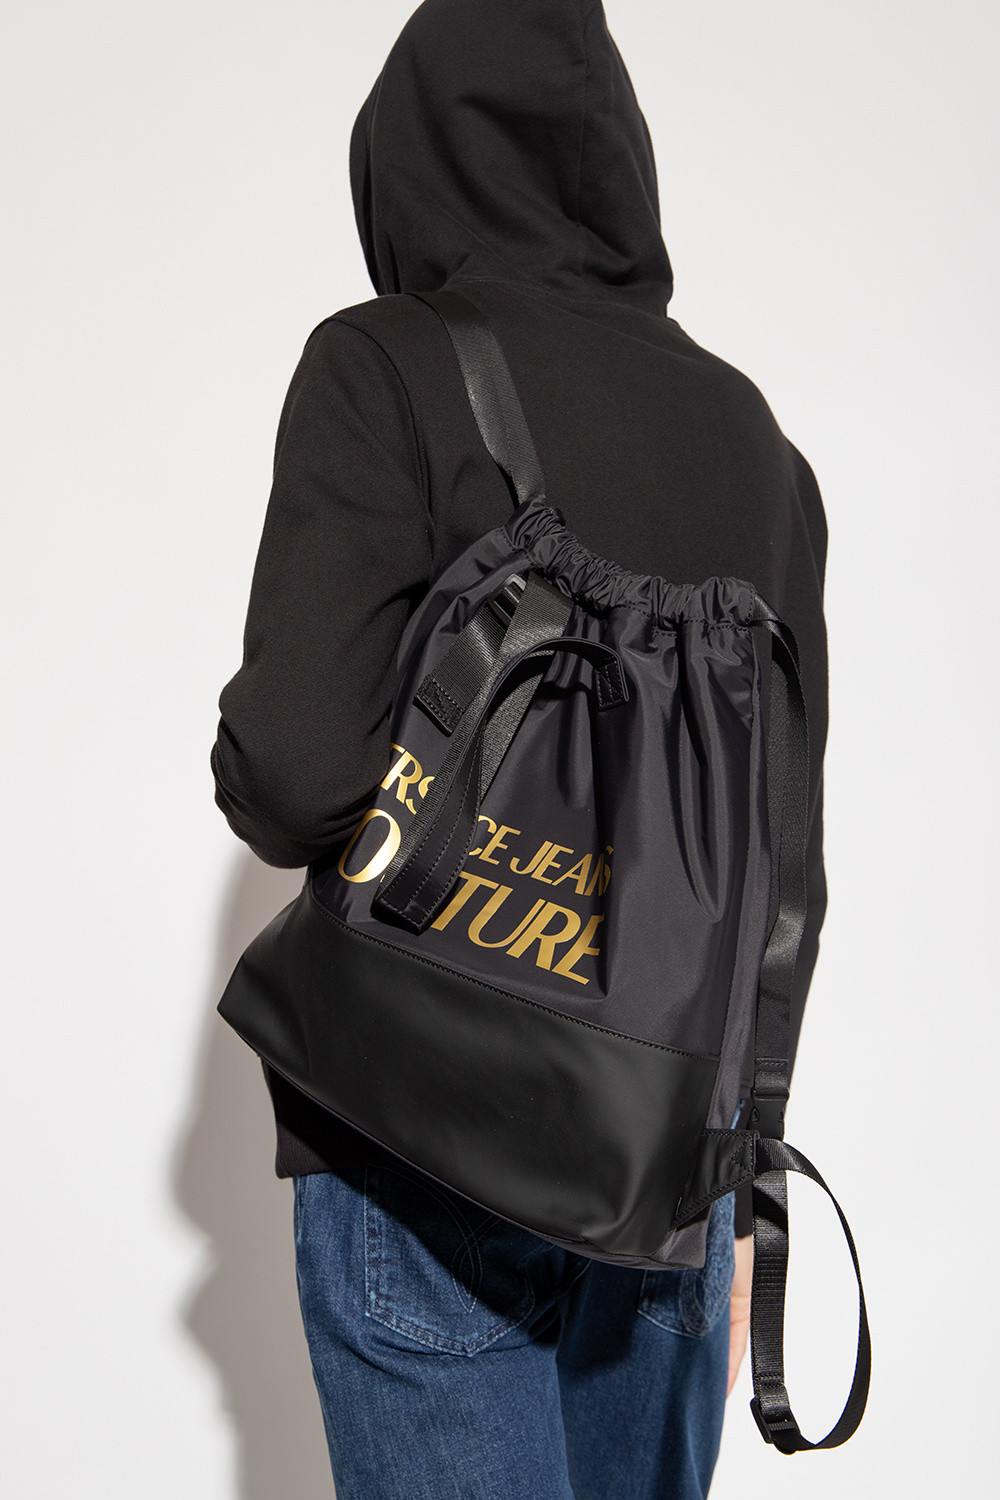 Versace Cuff jeans Couture Shopper bag